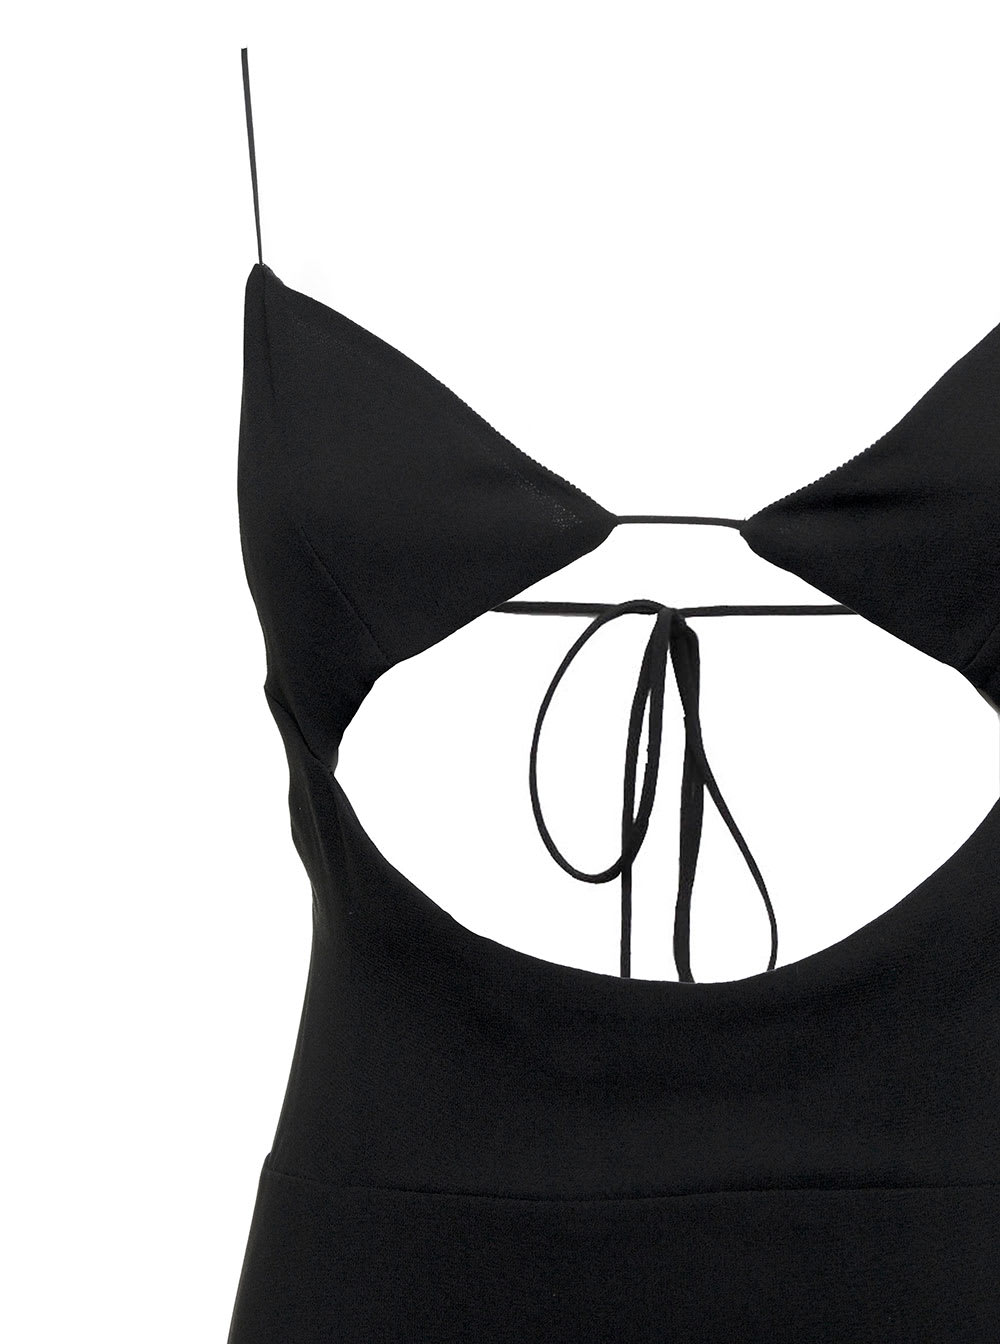 Shop Saint Laurent Black Viscose Crepe Long Dress With Cut Out Detail